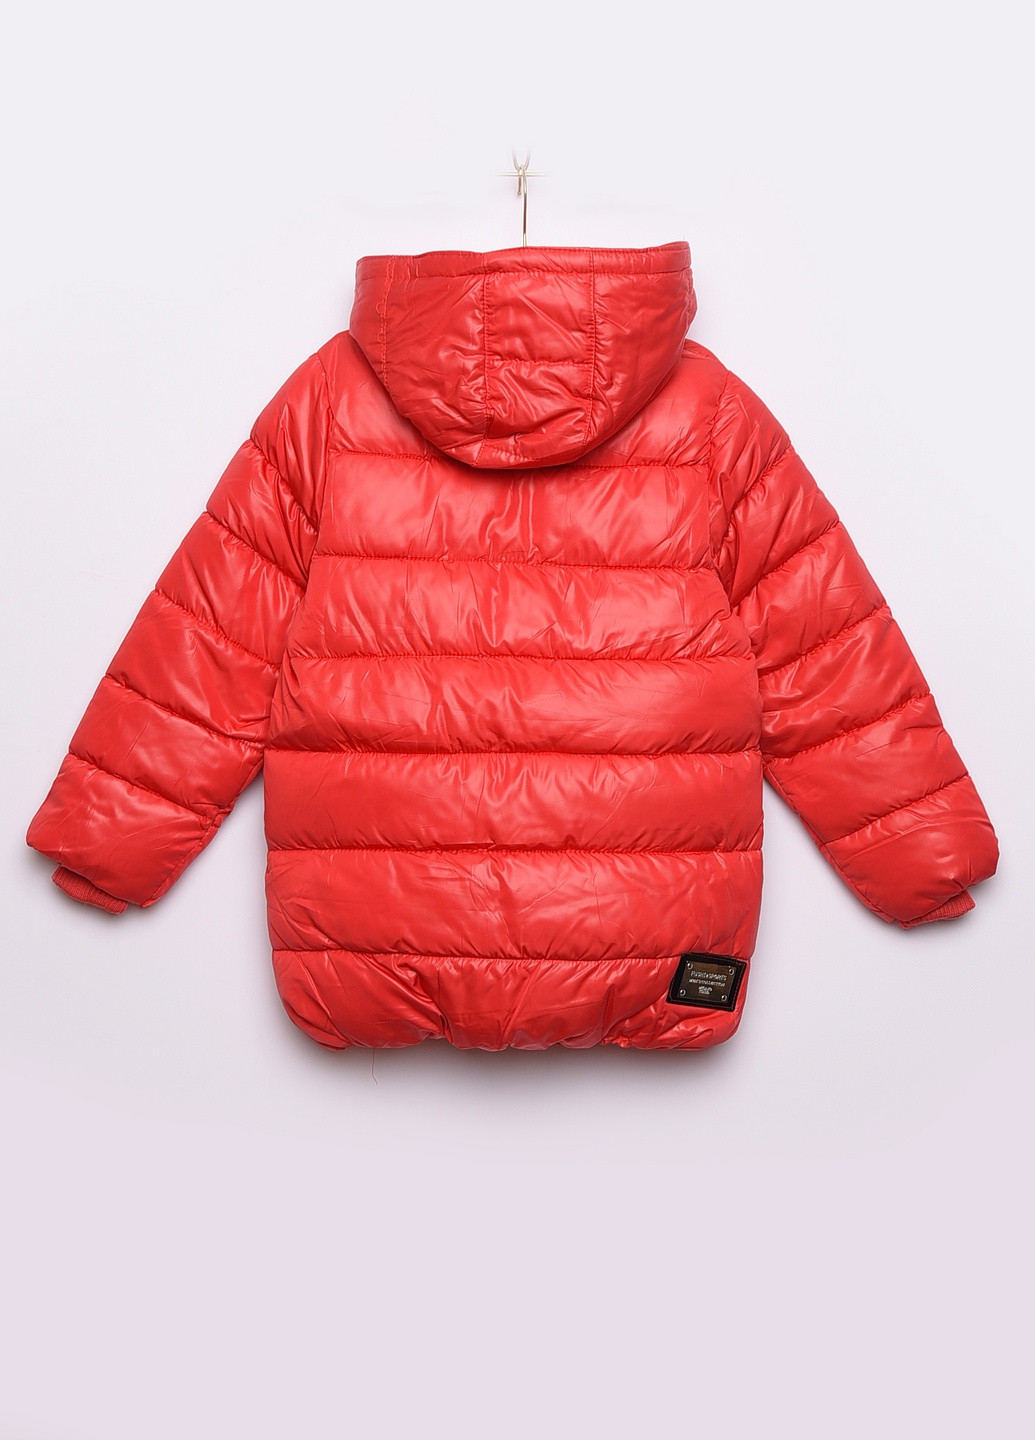 Красная демисезонная куртка детская демисезон красная с капюшоном Let's Shop